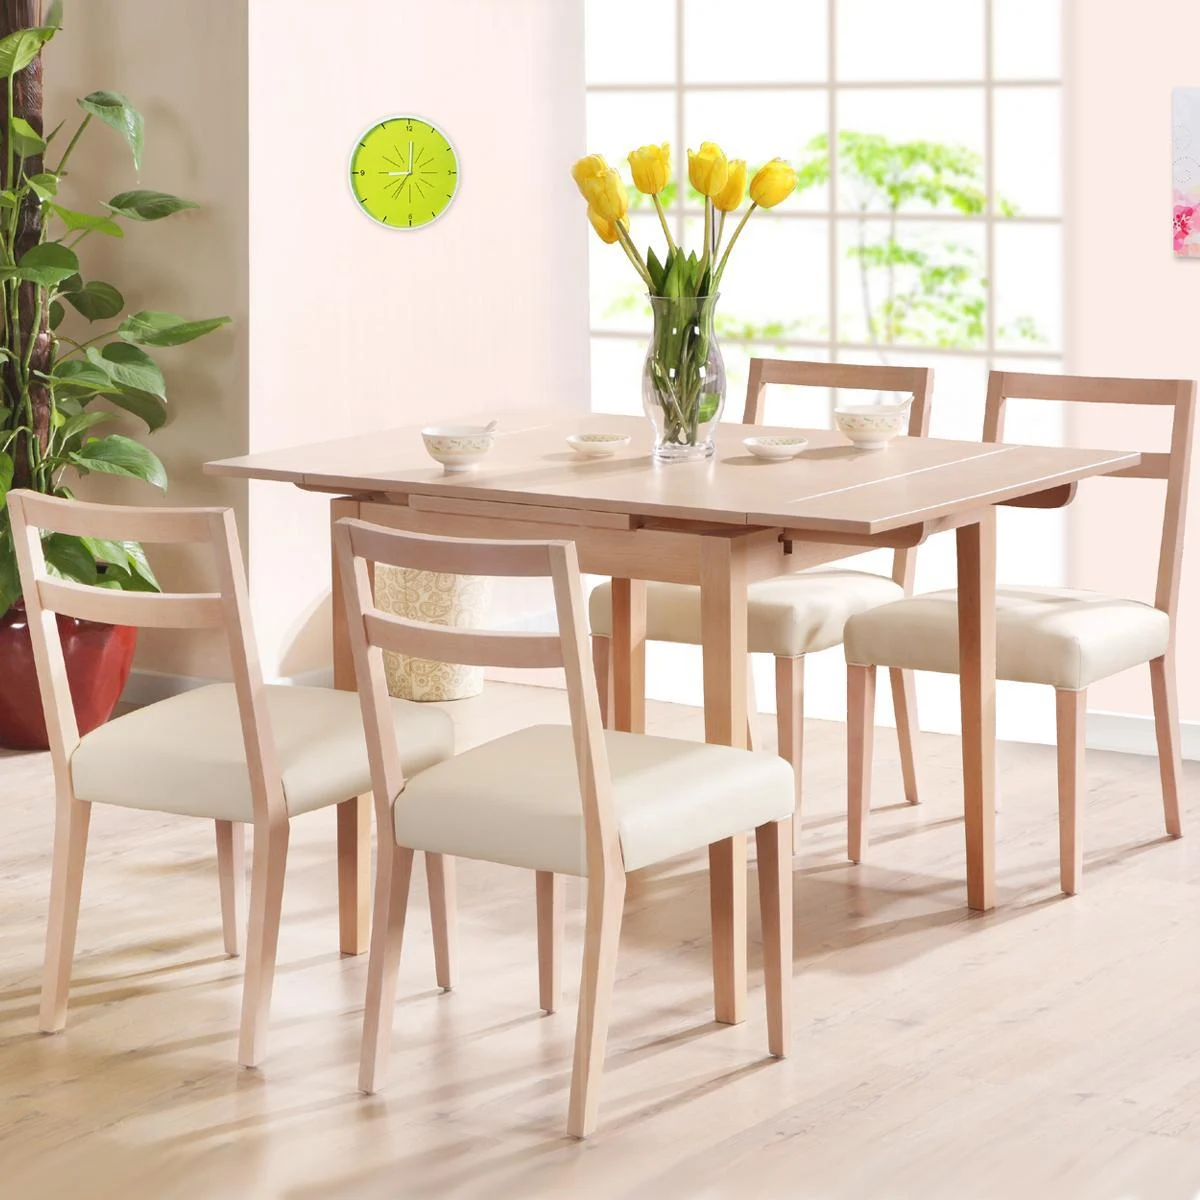 Tiết kiệm diện tích cho căn nhà khi sử dụng mẫu bàn ăn 4 ghế bằng gỗ cao su